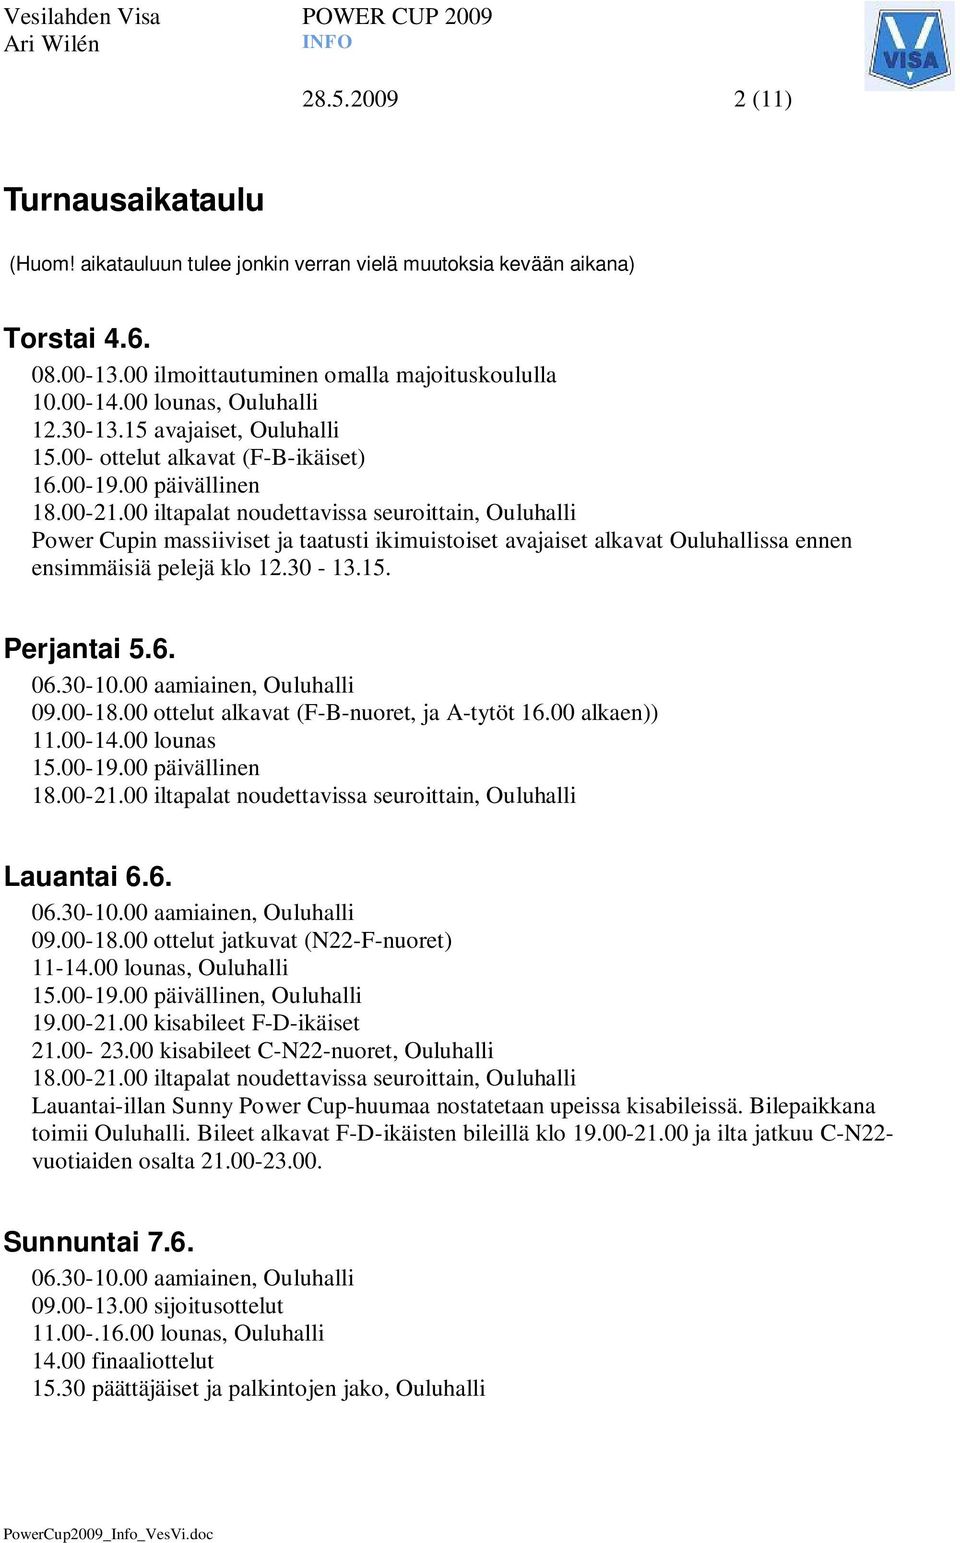 00 iltapalat noudettavissa seuroittain, Ouluhalli Power Cupin massiiviset ja taatusti ikimuistoiset avajaiset alkavat Ouluhallissa ennen ensimmäisiä pelejä klo 12.30-13.15. Perjantai 5.6. 06.30-10.